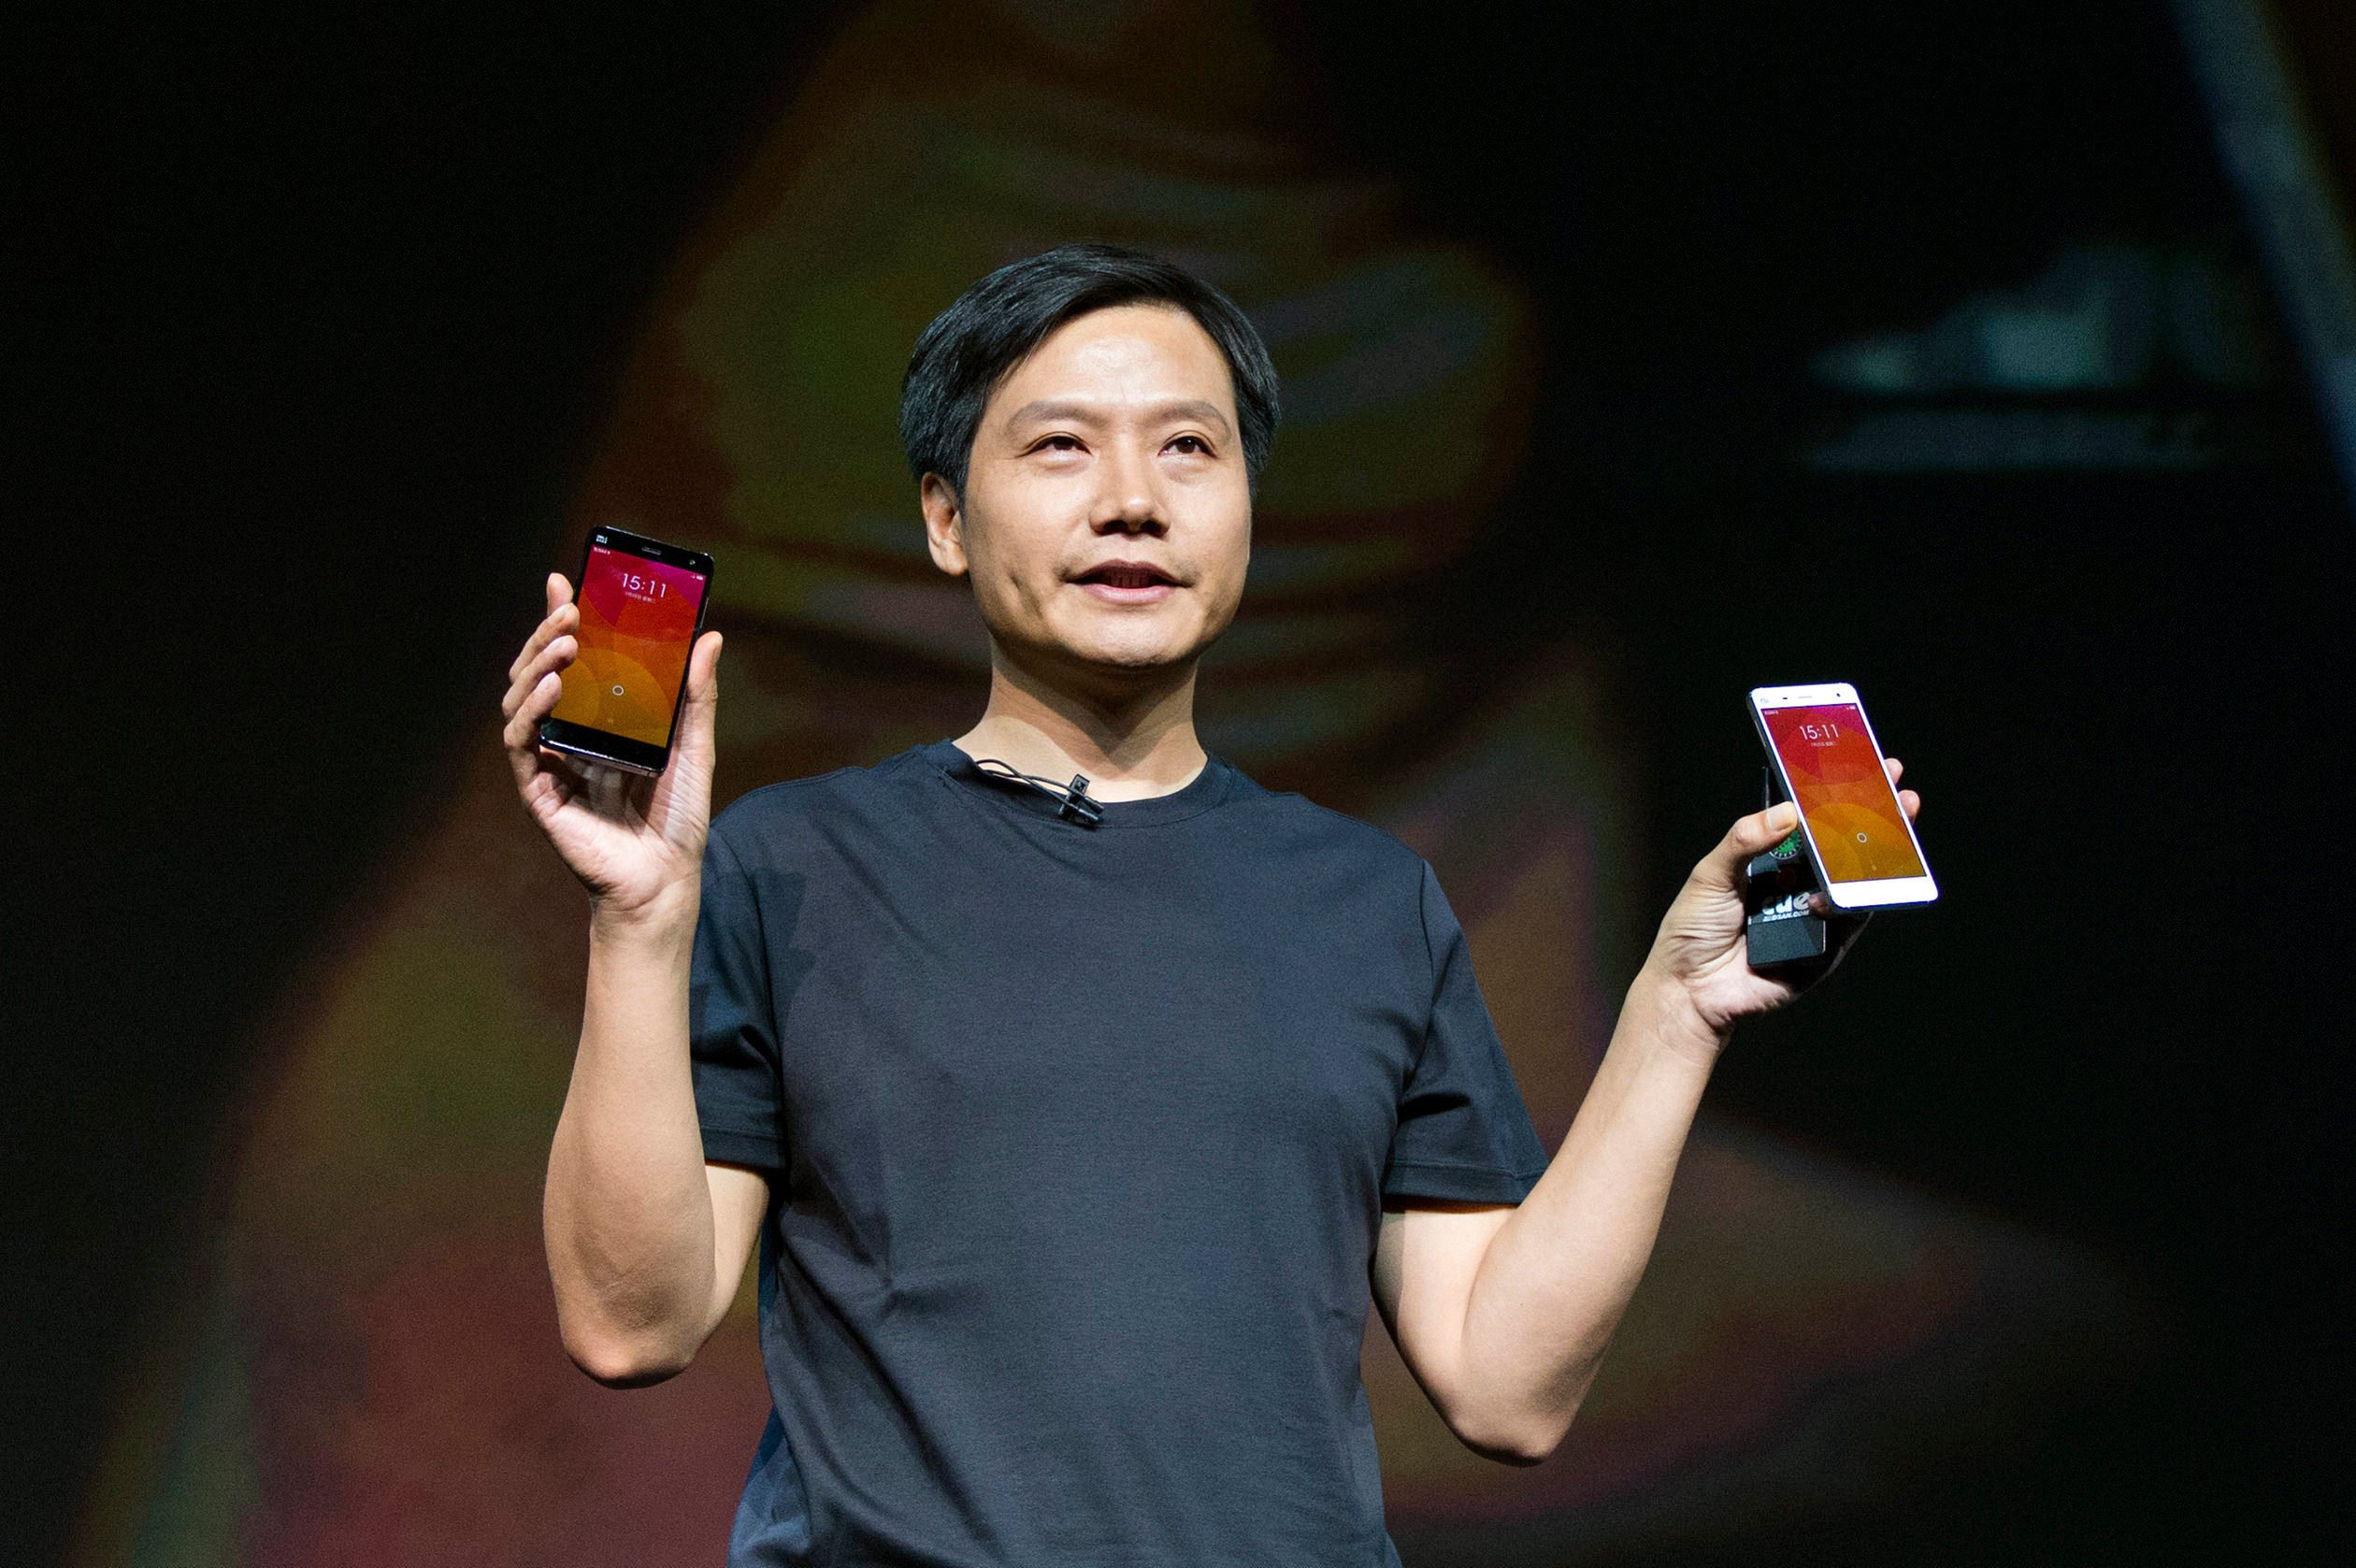 Сколько Стоит Xiaomi В Китае